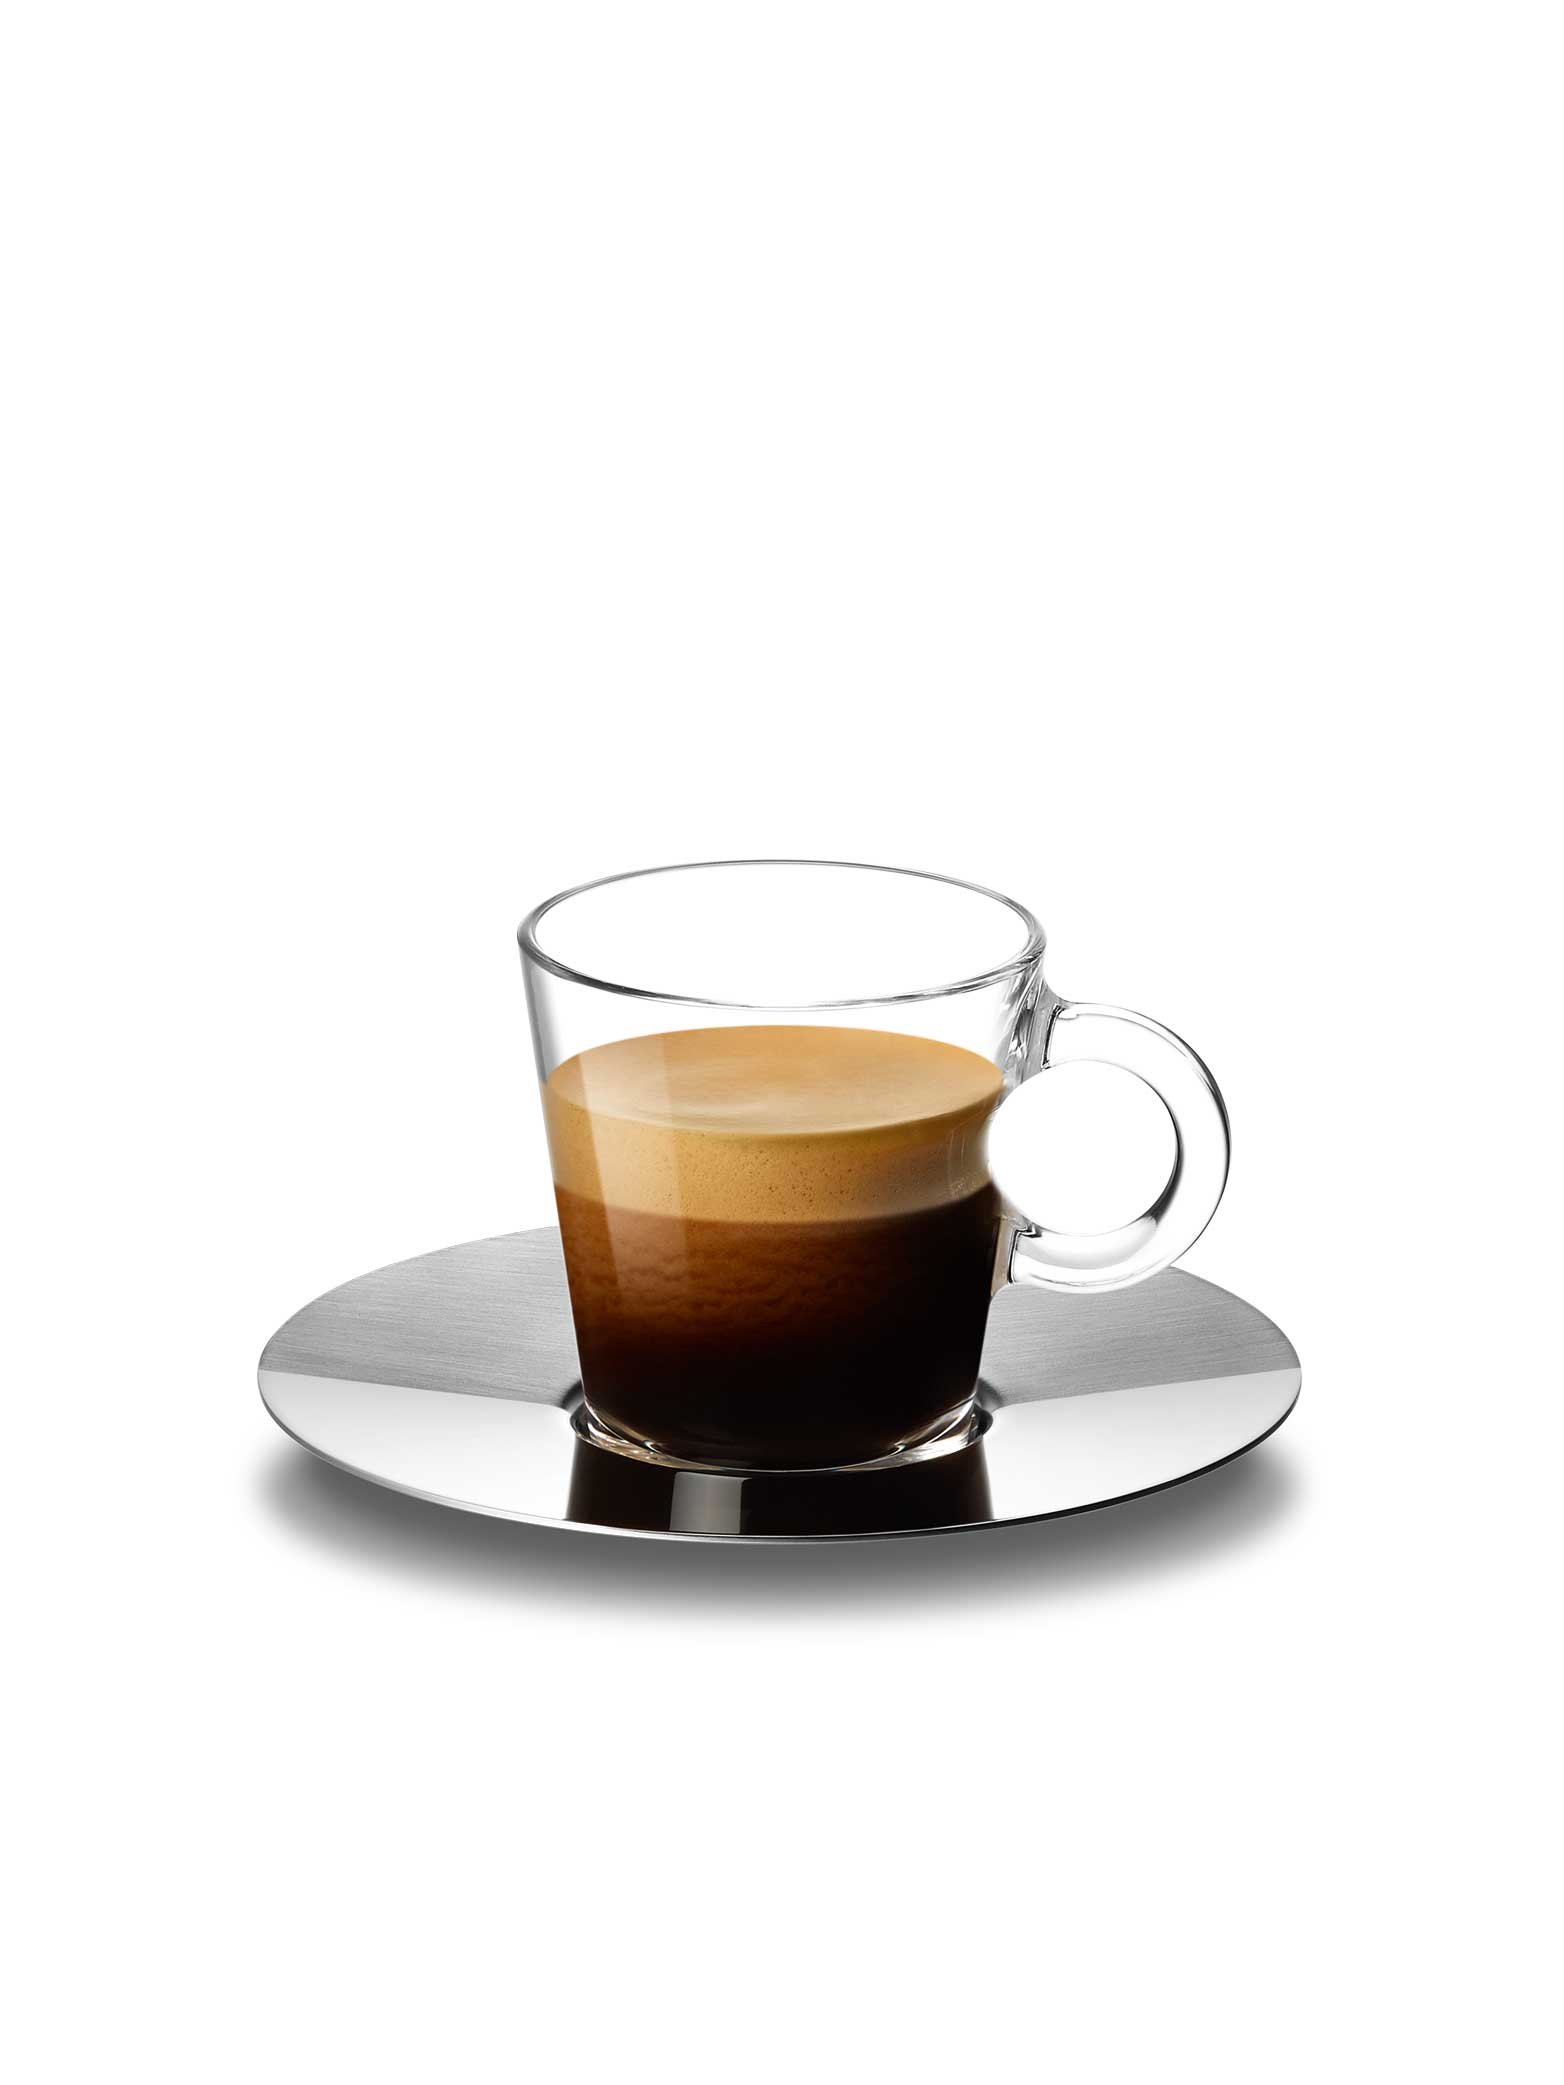 Griffiges Glas: Kaffeetassen-Set «View” von atelier oï für Nespresso. 